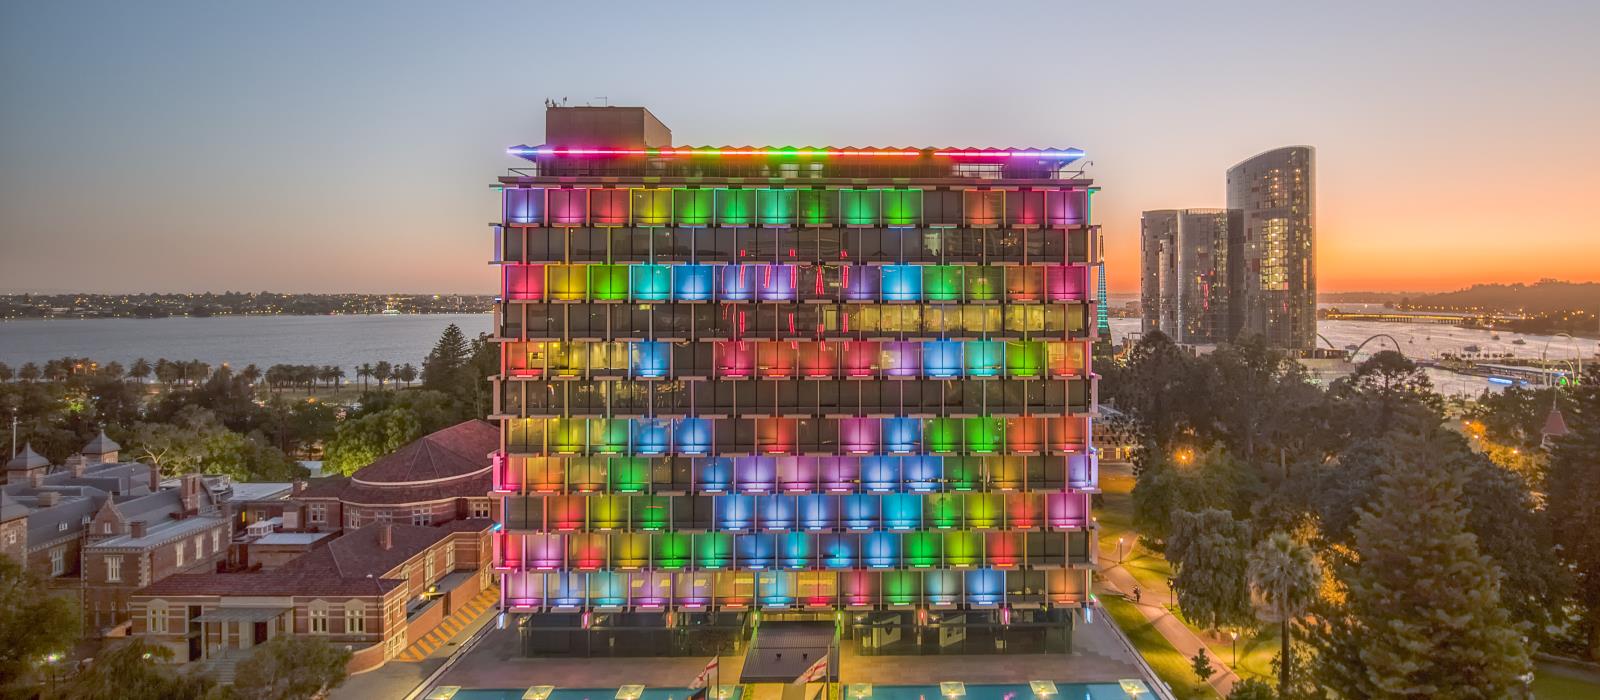 Council House Rainbow 2020